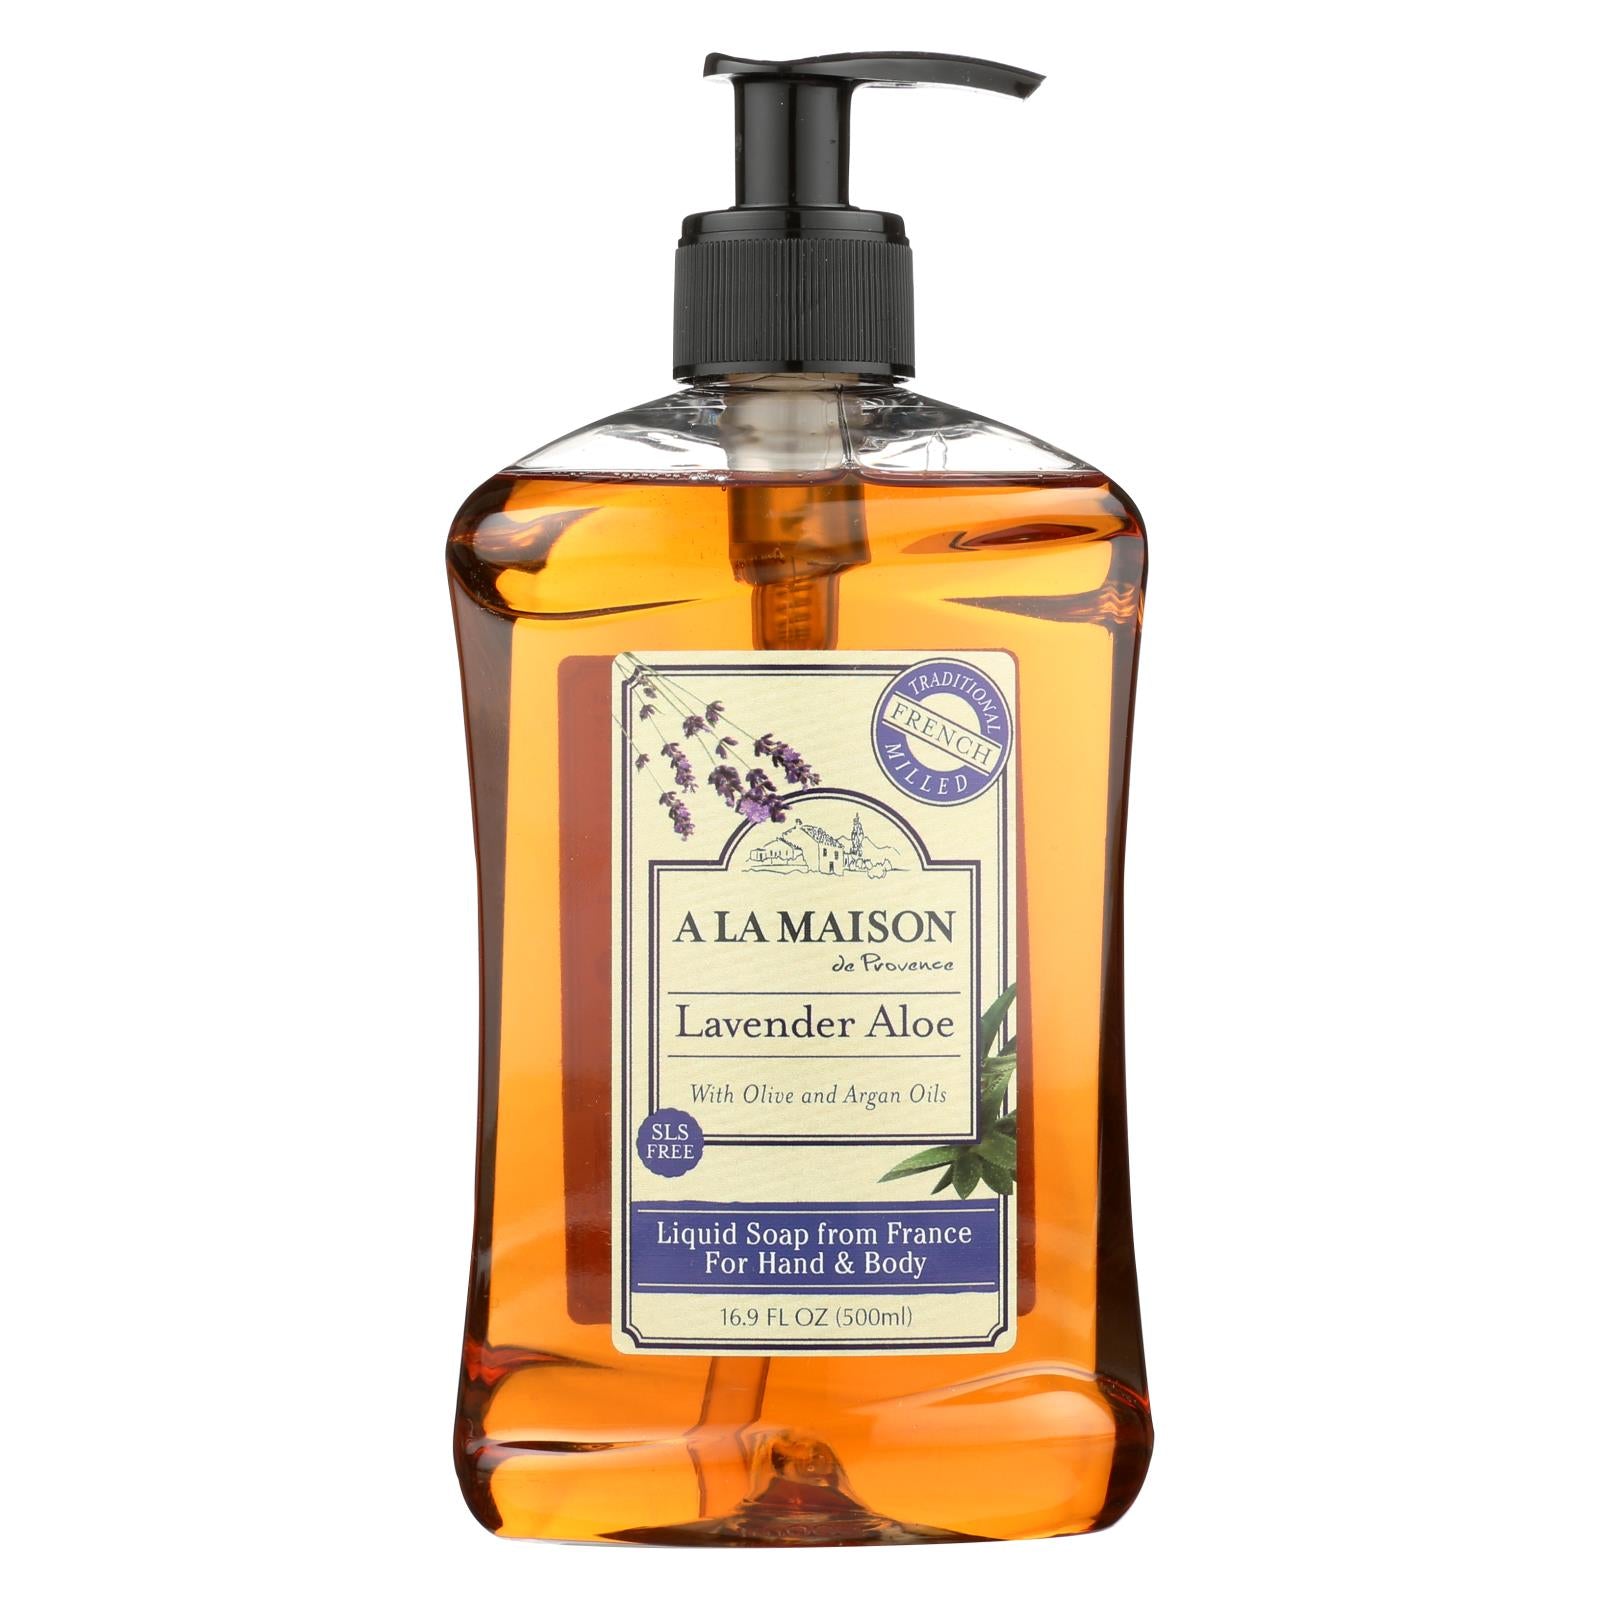 A La Maison - French Liquid Soap - Lavender Aloe - 16.9 Fl Oz